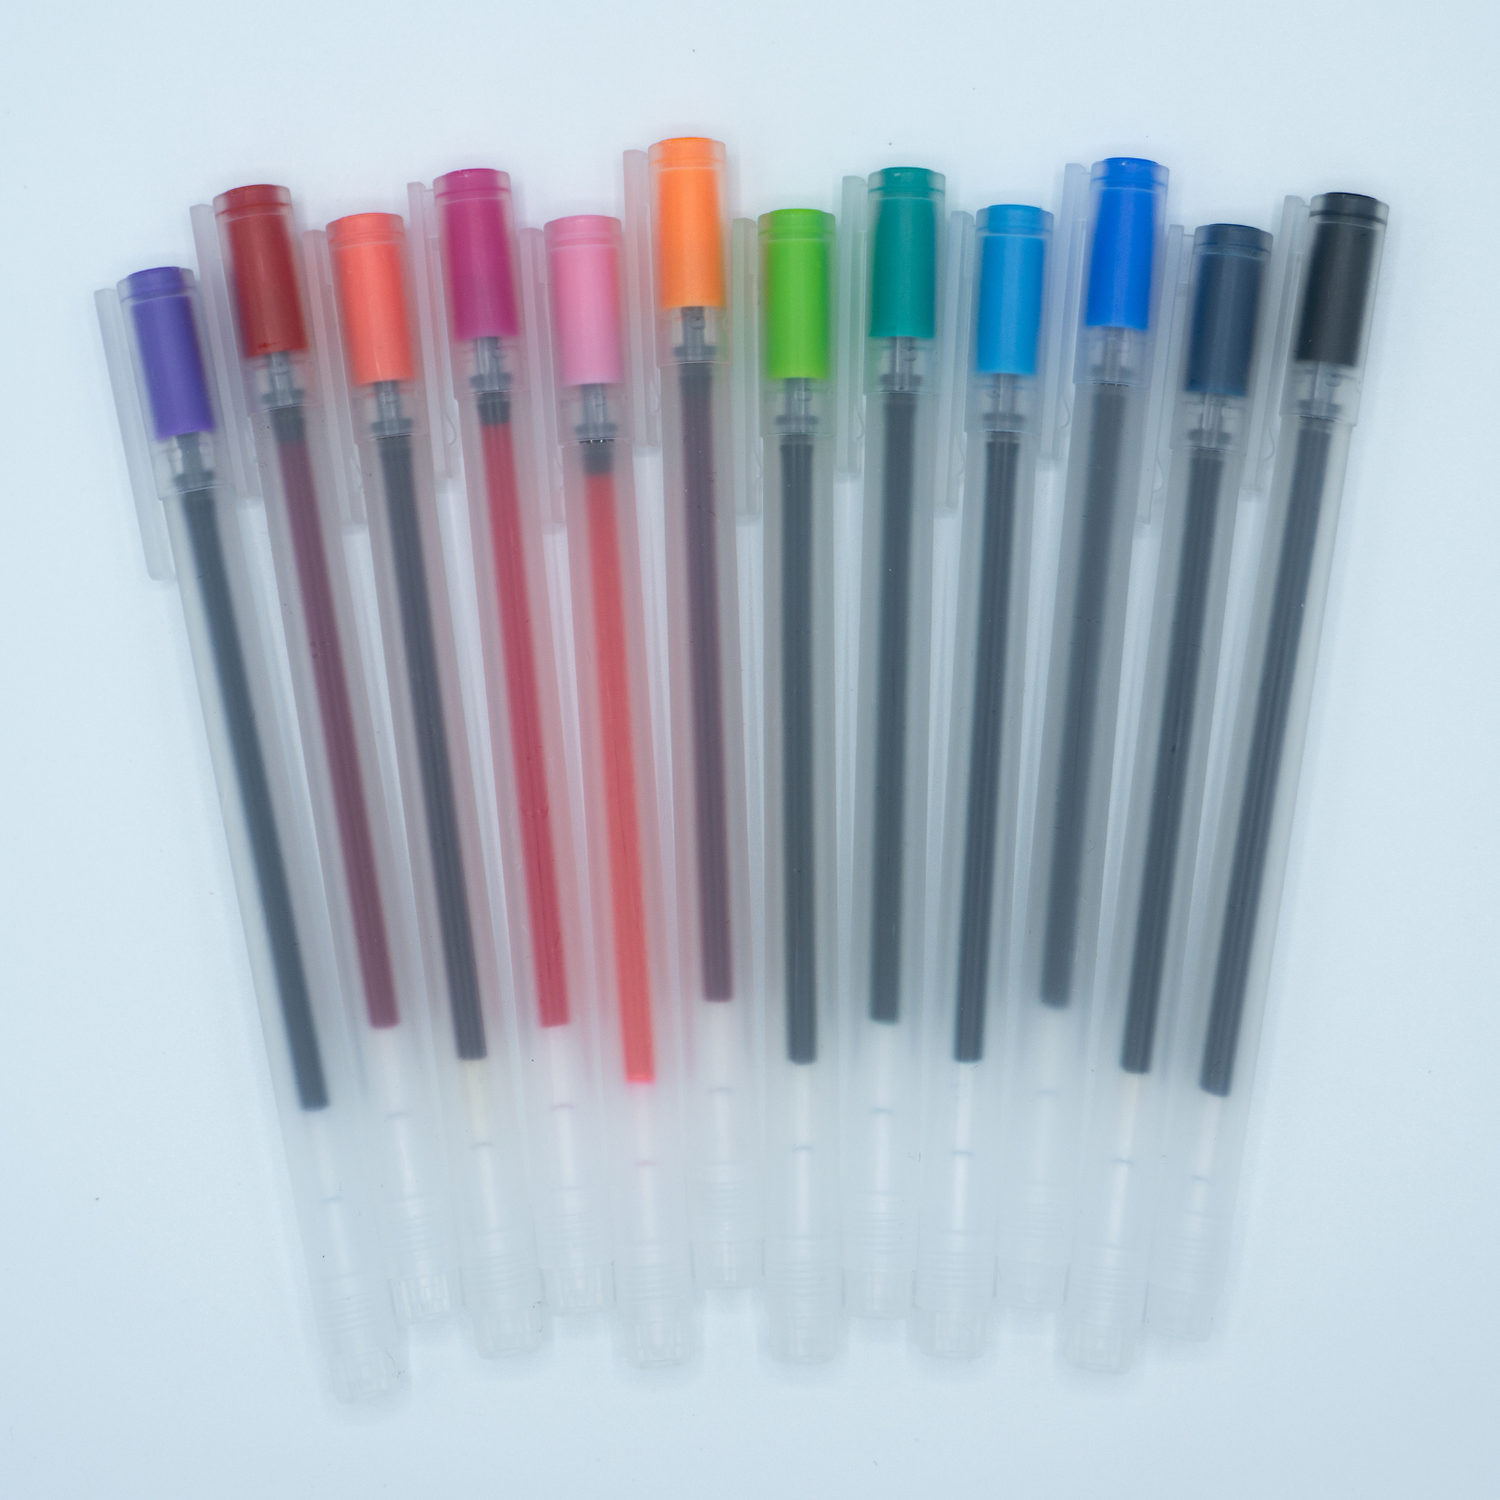 Set of twelve pens in assorted colors